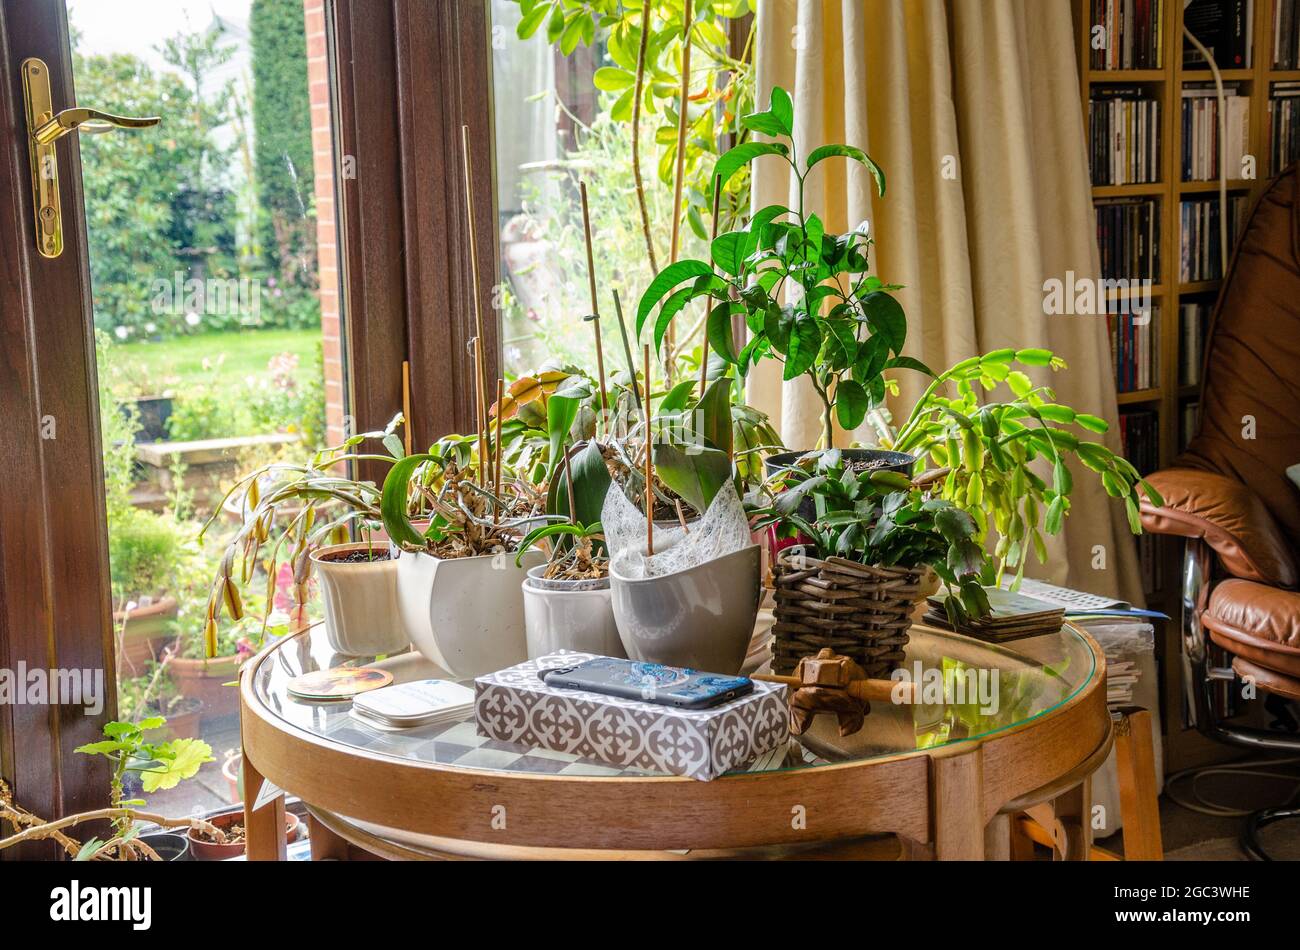 Una mesa circular de vidrio con mesas de hojas anidadas con plantas de casa en ollas en la parte superior. Foto de stock